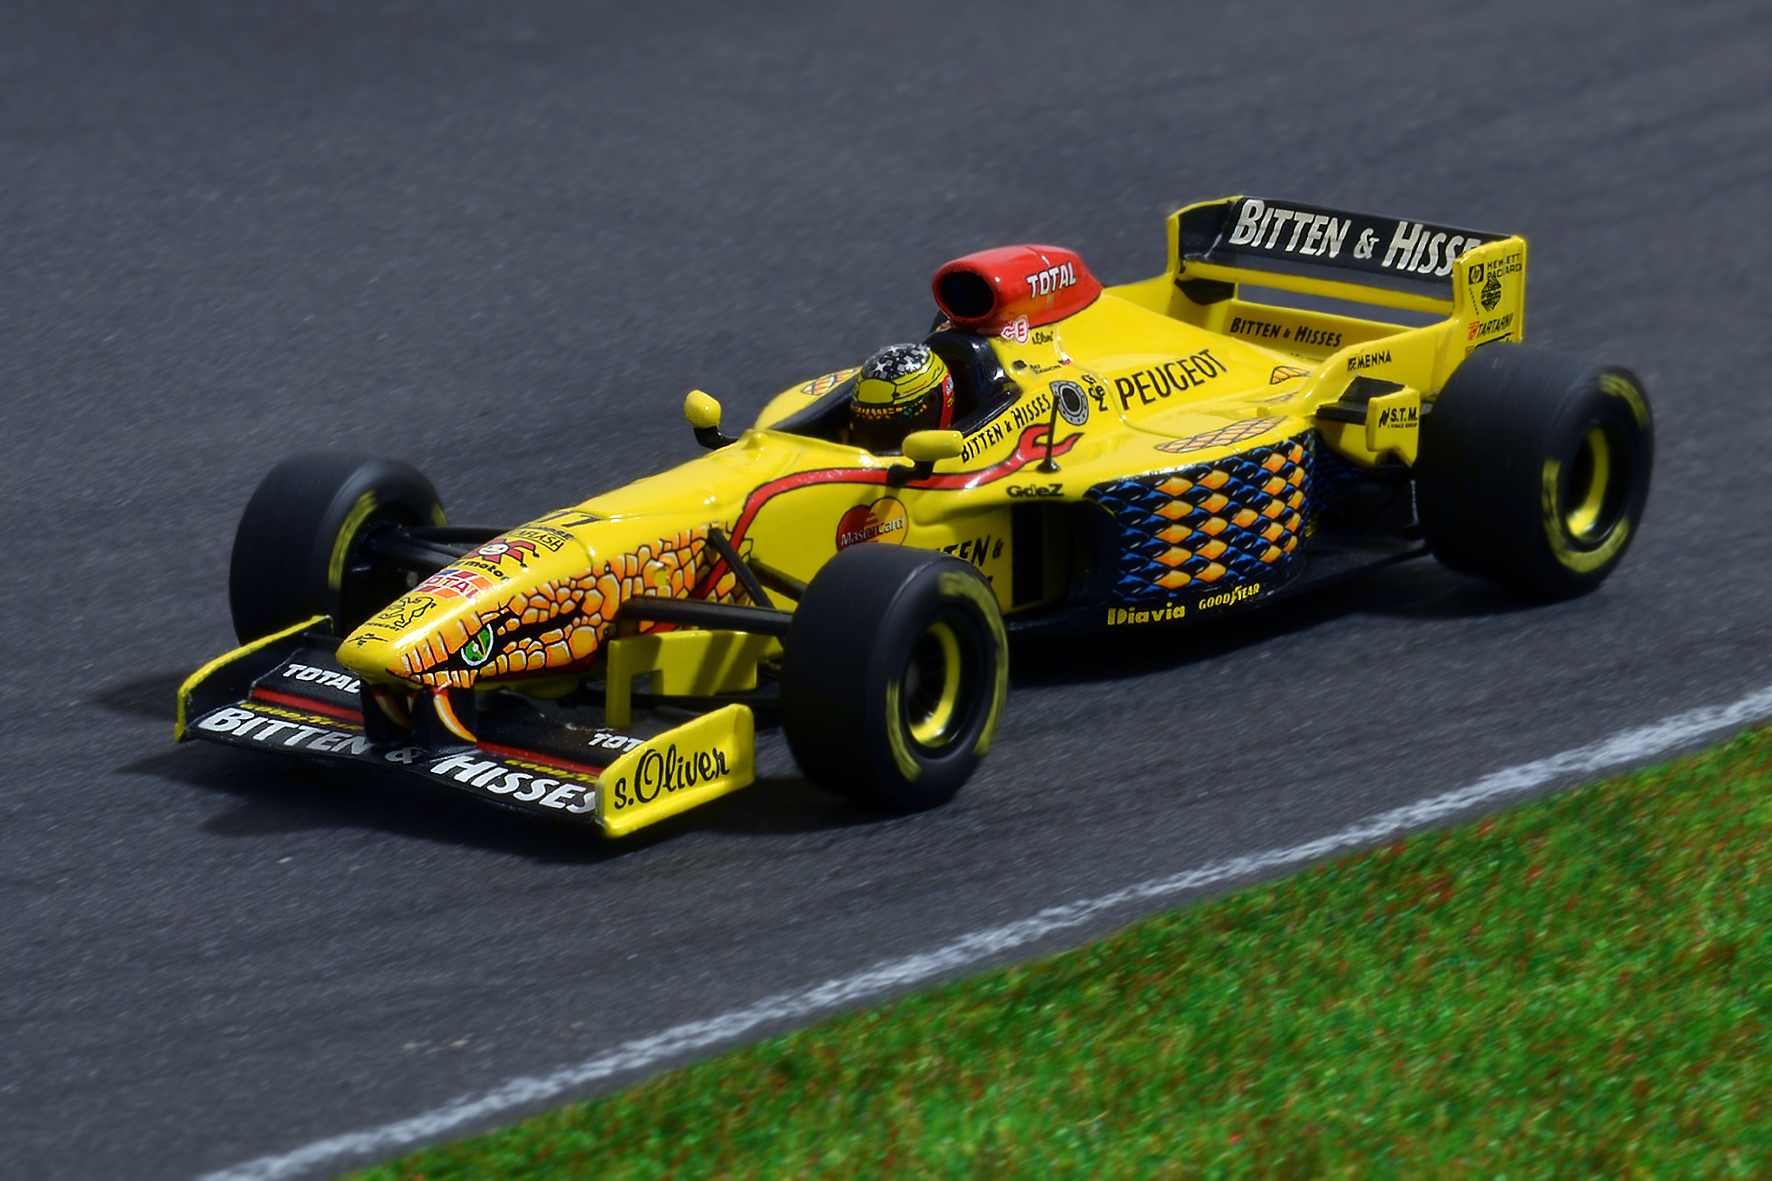 Jordan 197 Ralf Schumacher 1997 - Minichamps 1:43